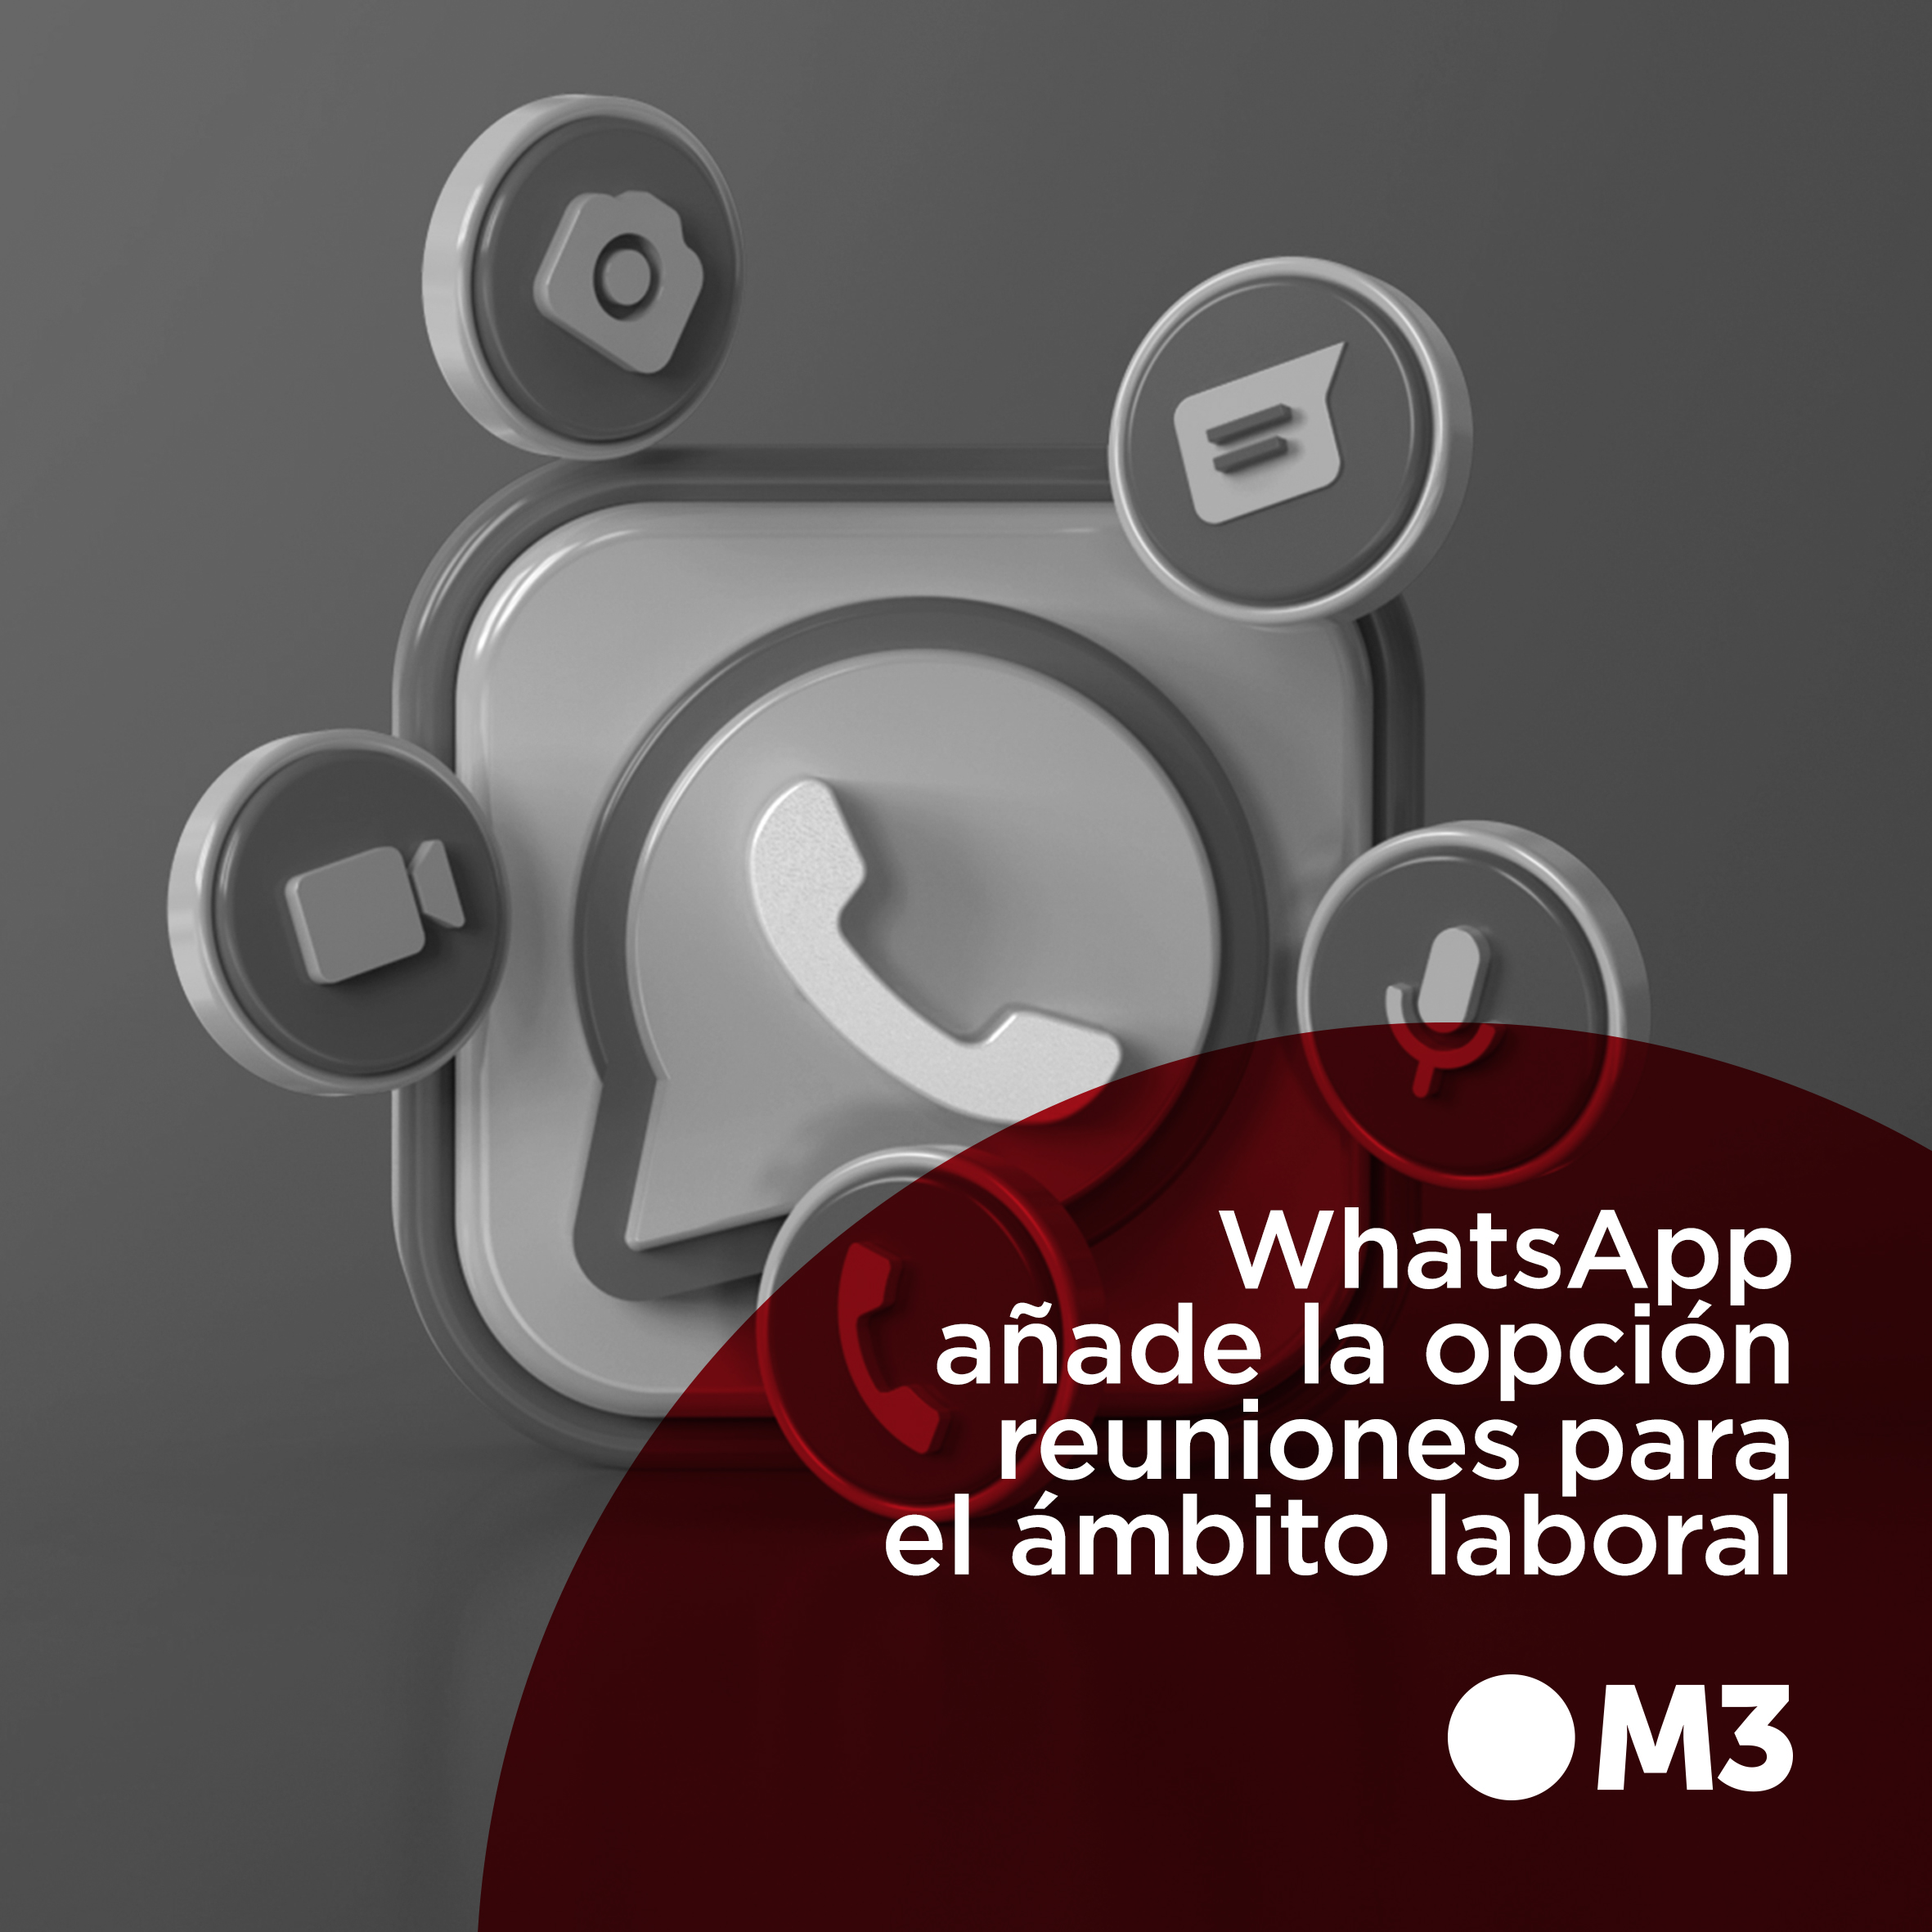 WhatsApp añade la opción reuniones para el ámbito laboral